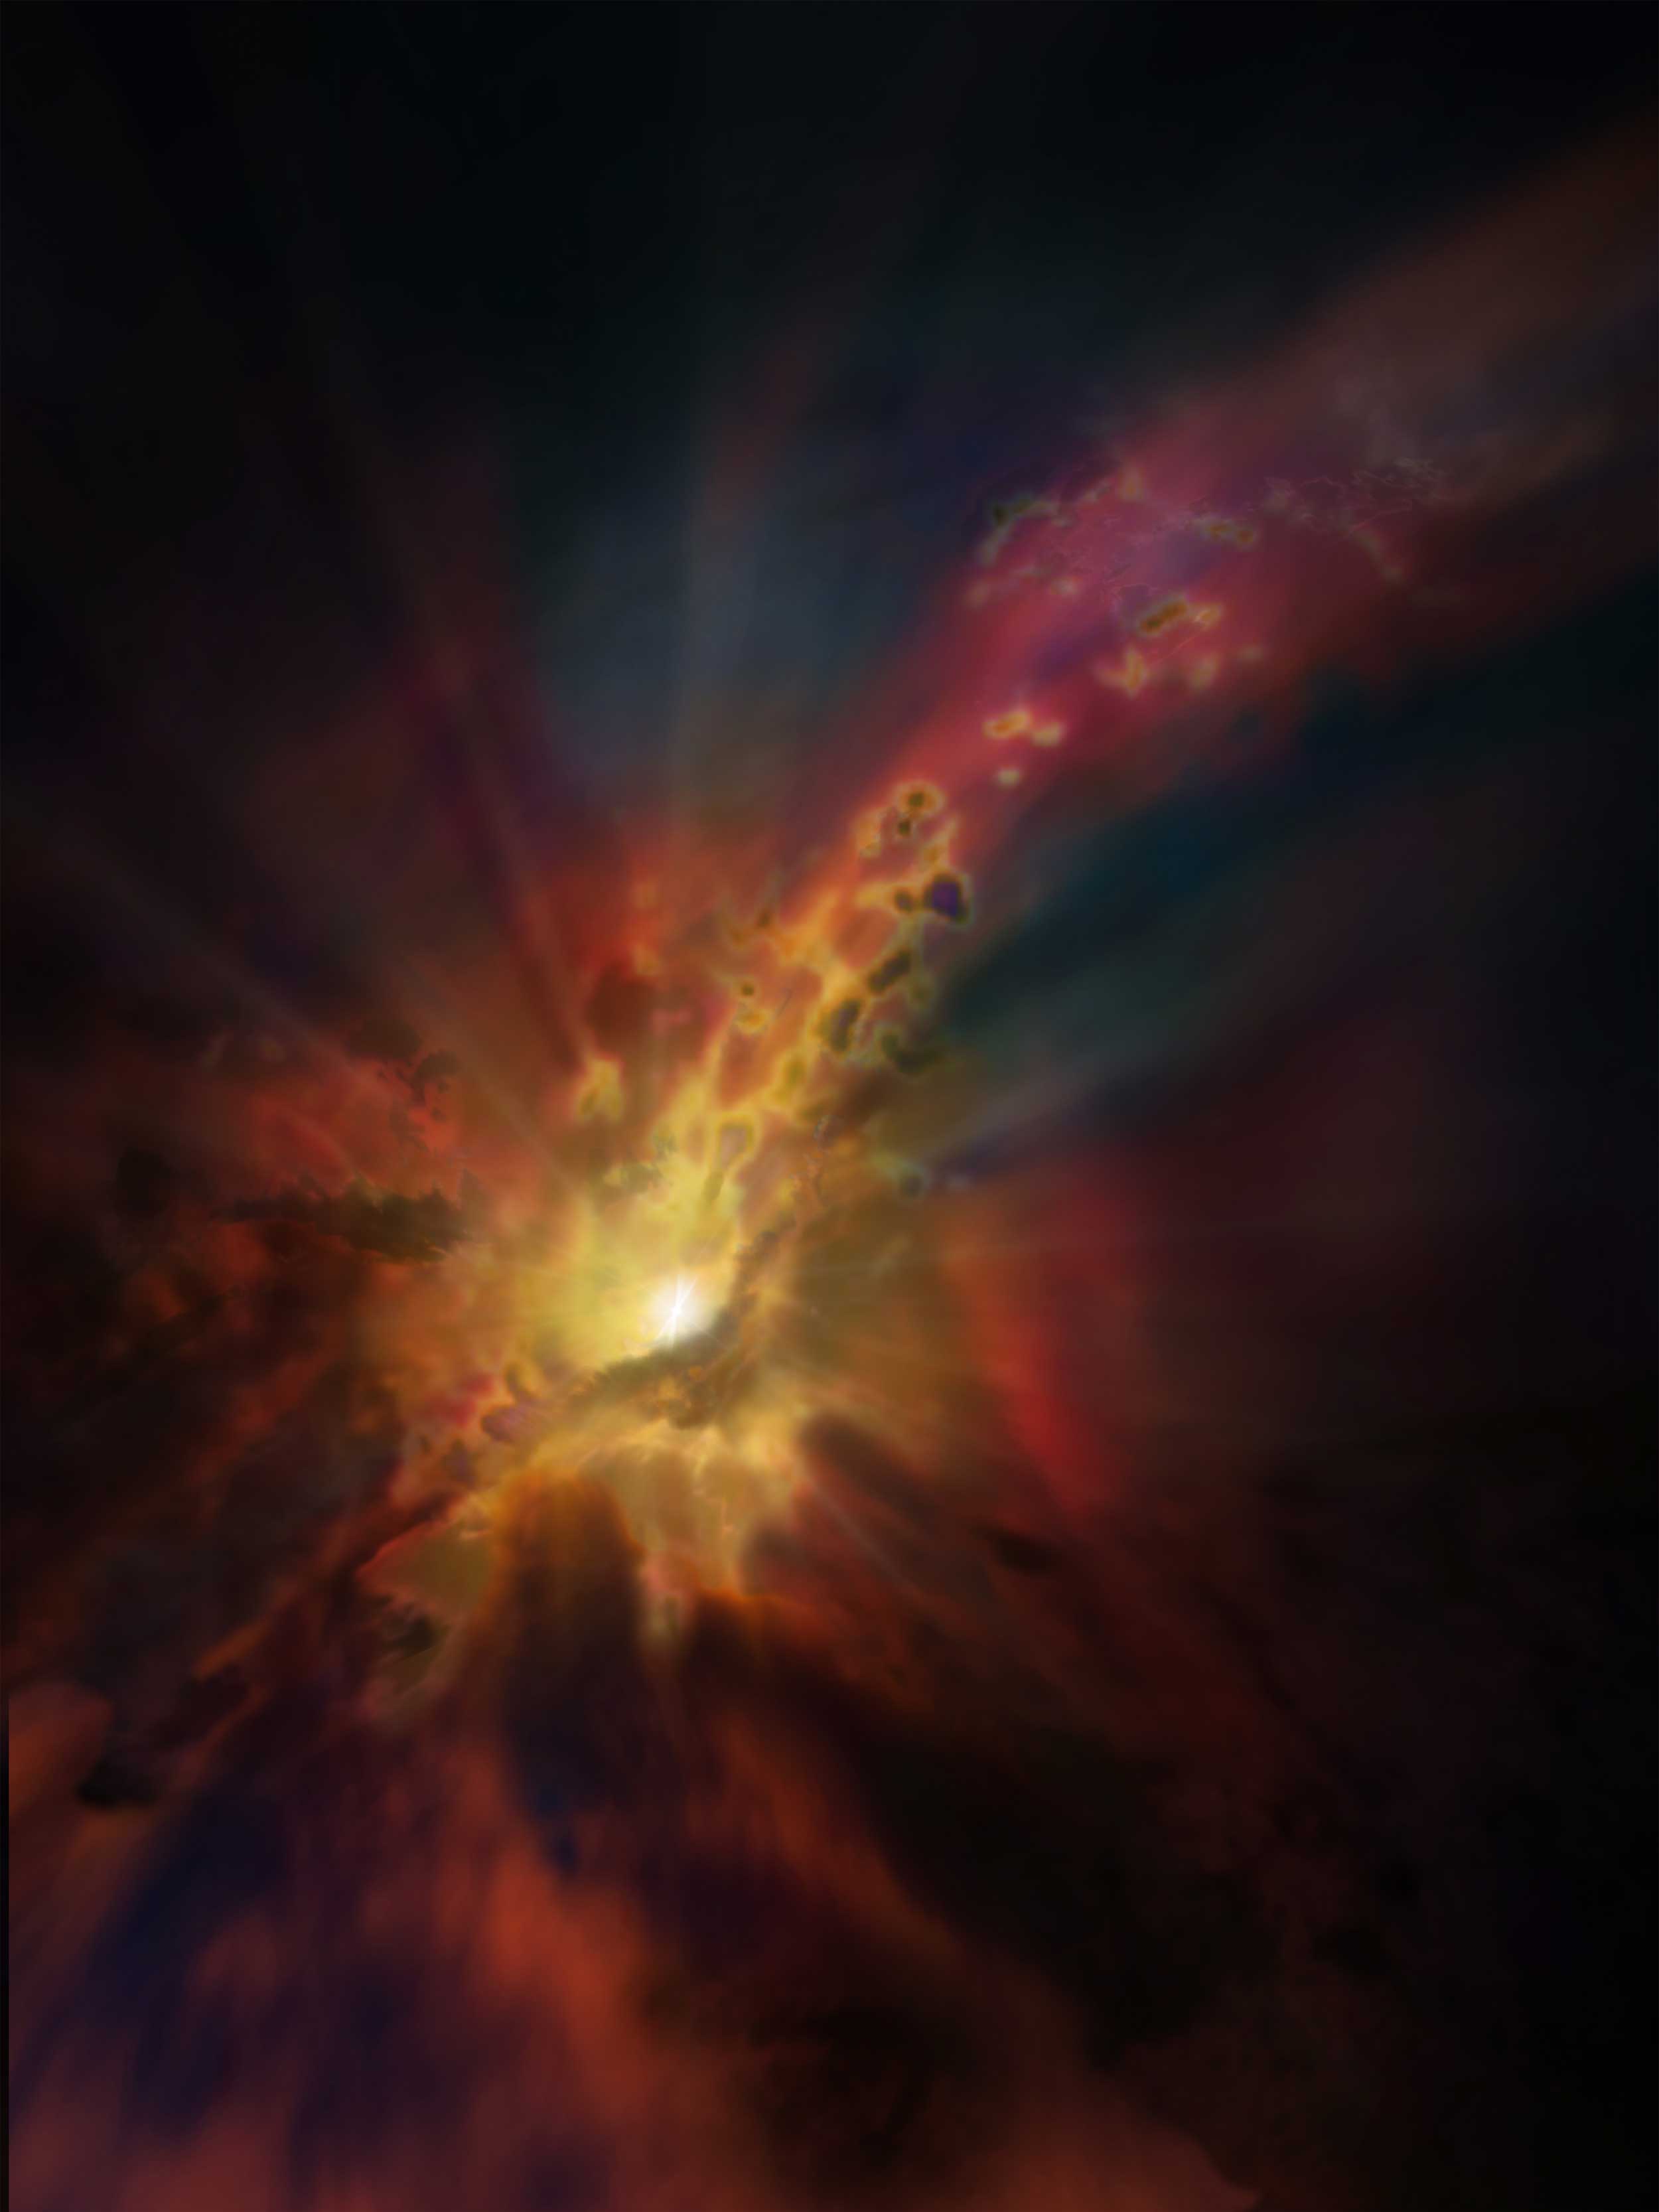 Об особенностях "питания" черной дыры в галактике Abell 2597 [фото]